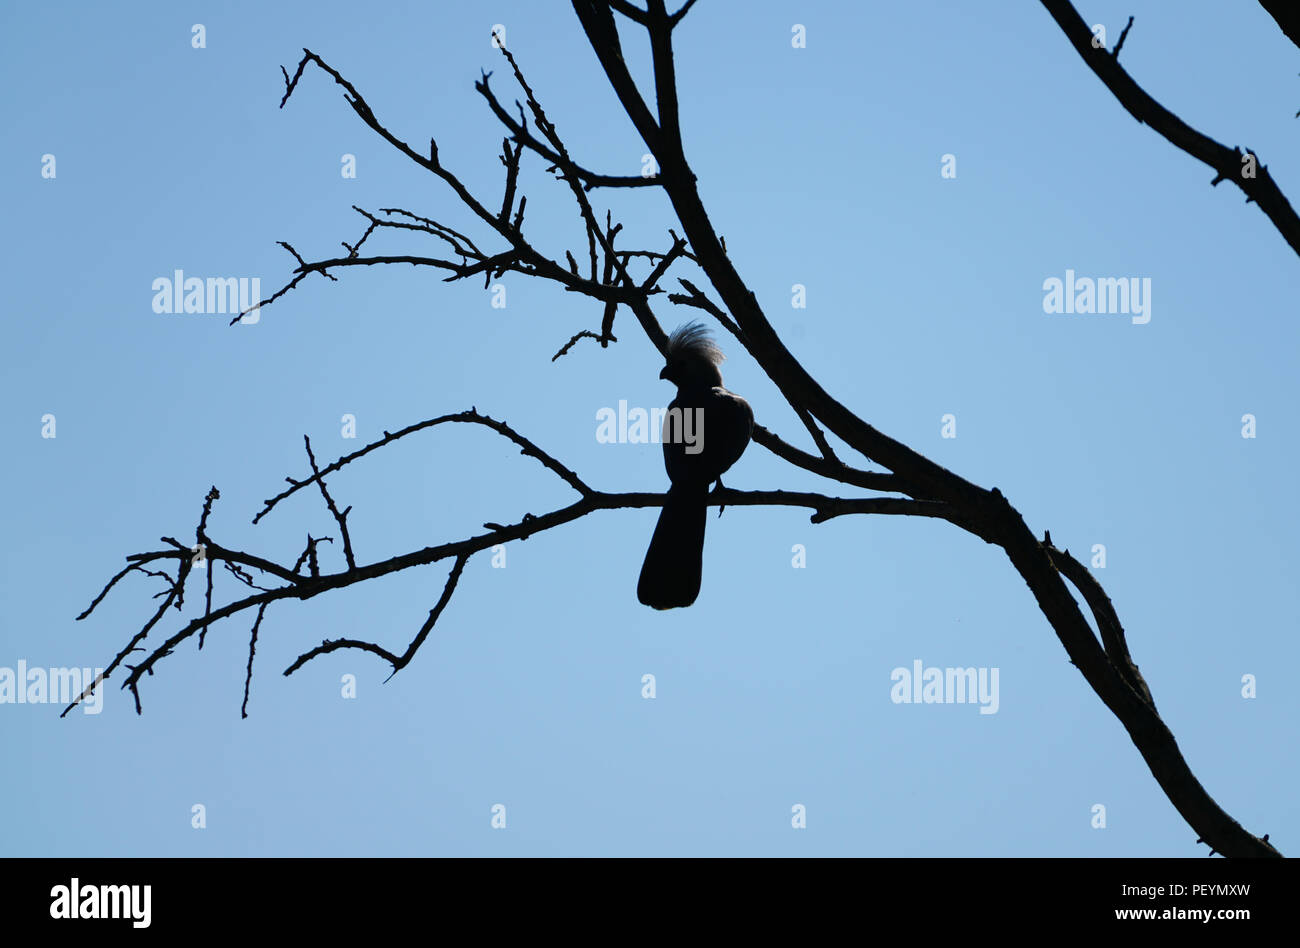 Desaparece la silueta de aves con cresta arriba encaramado sobre deshojado rama de forma libre contra el cielo azul. Foto de stock